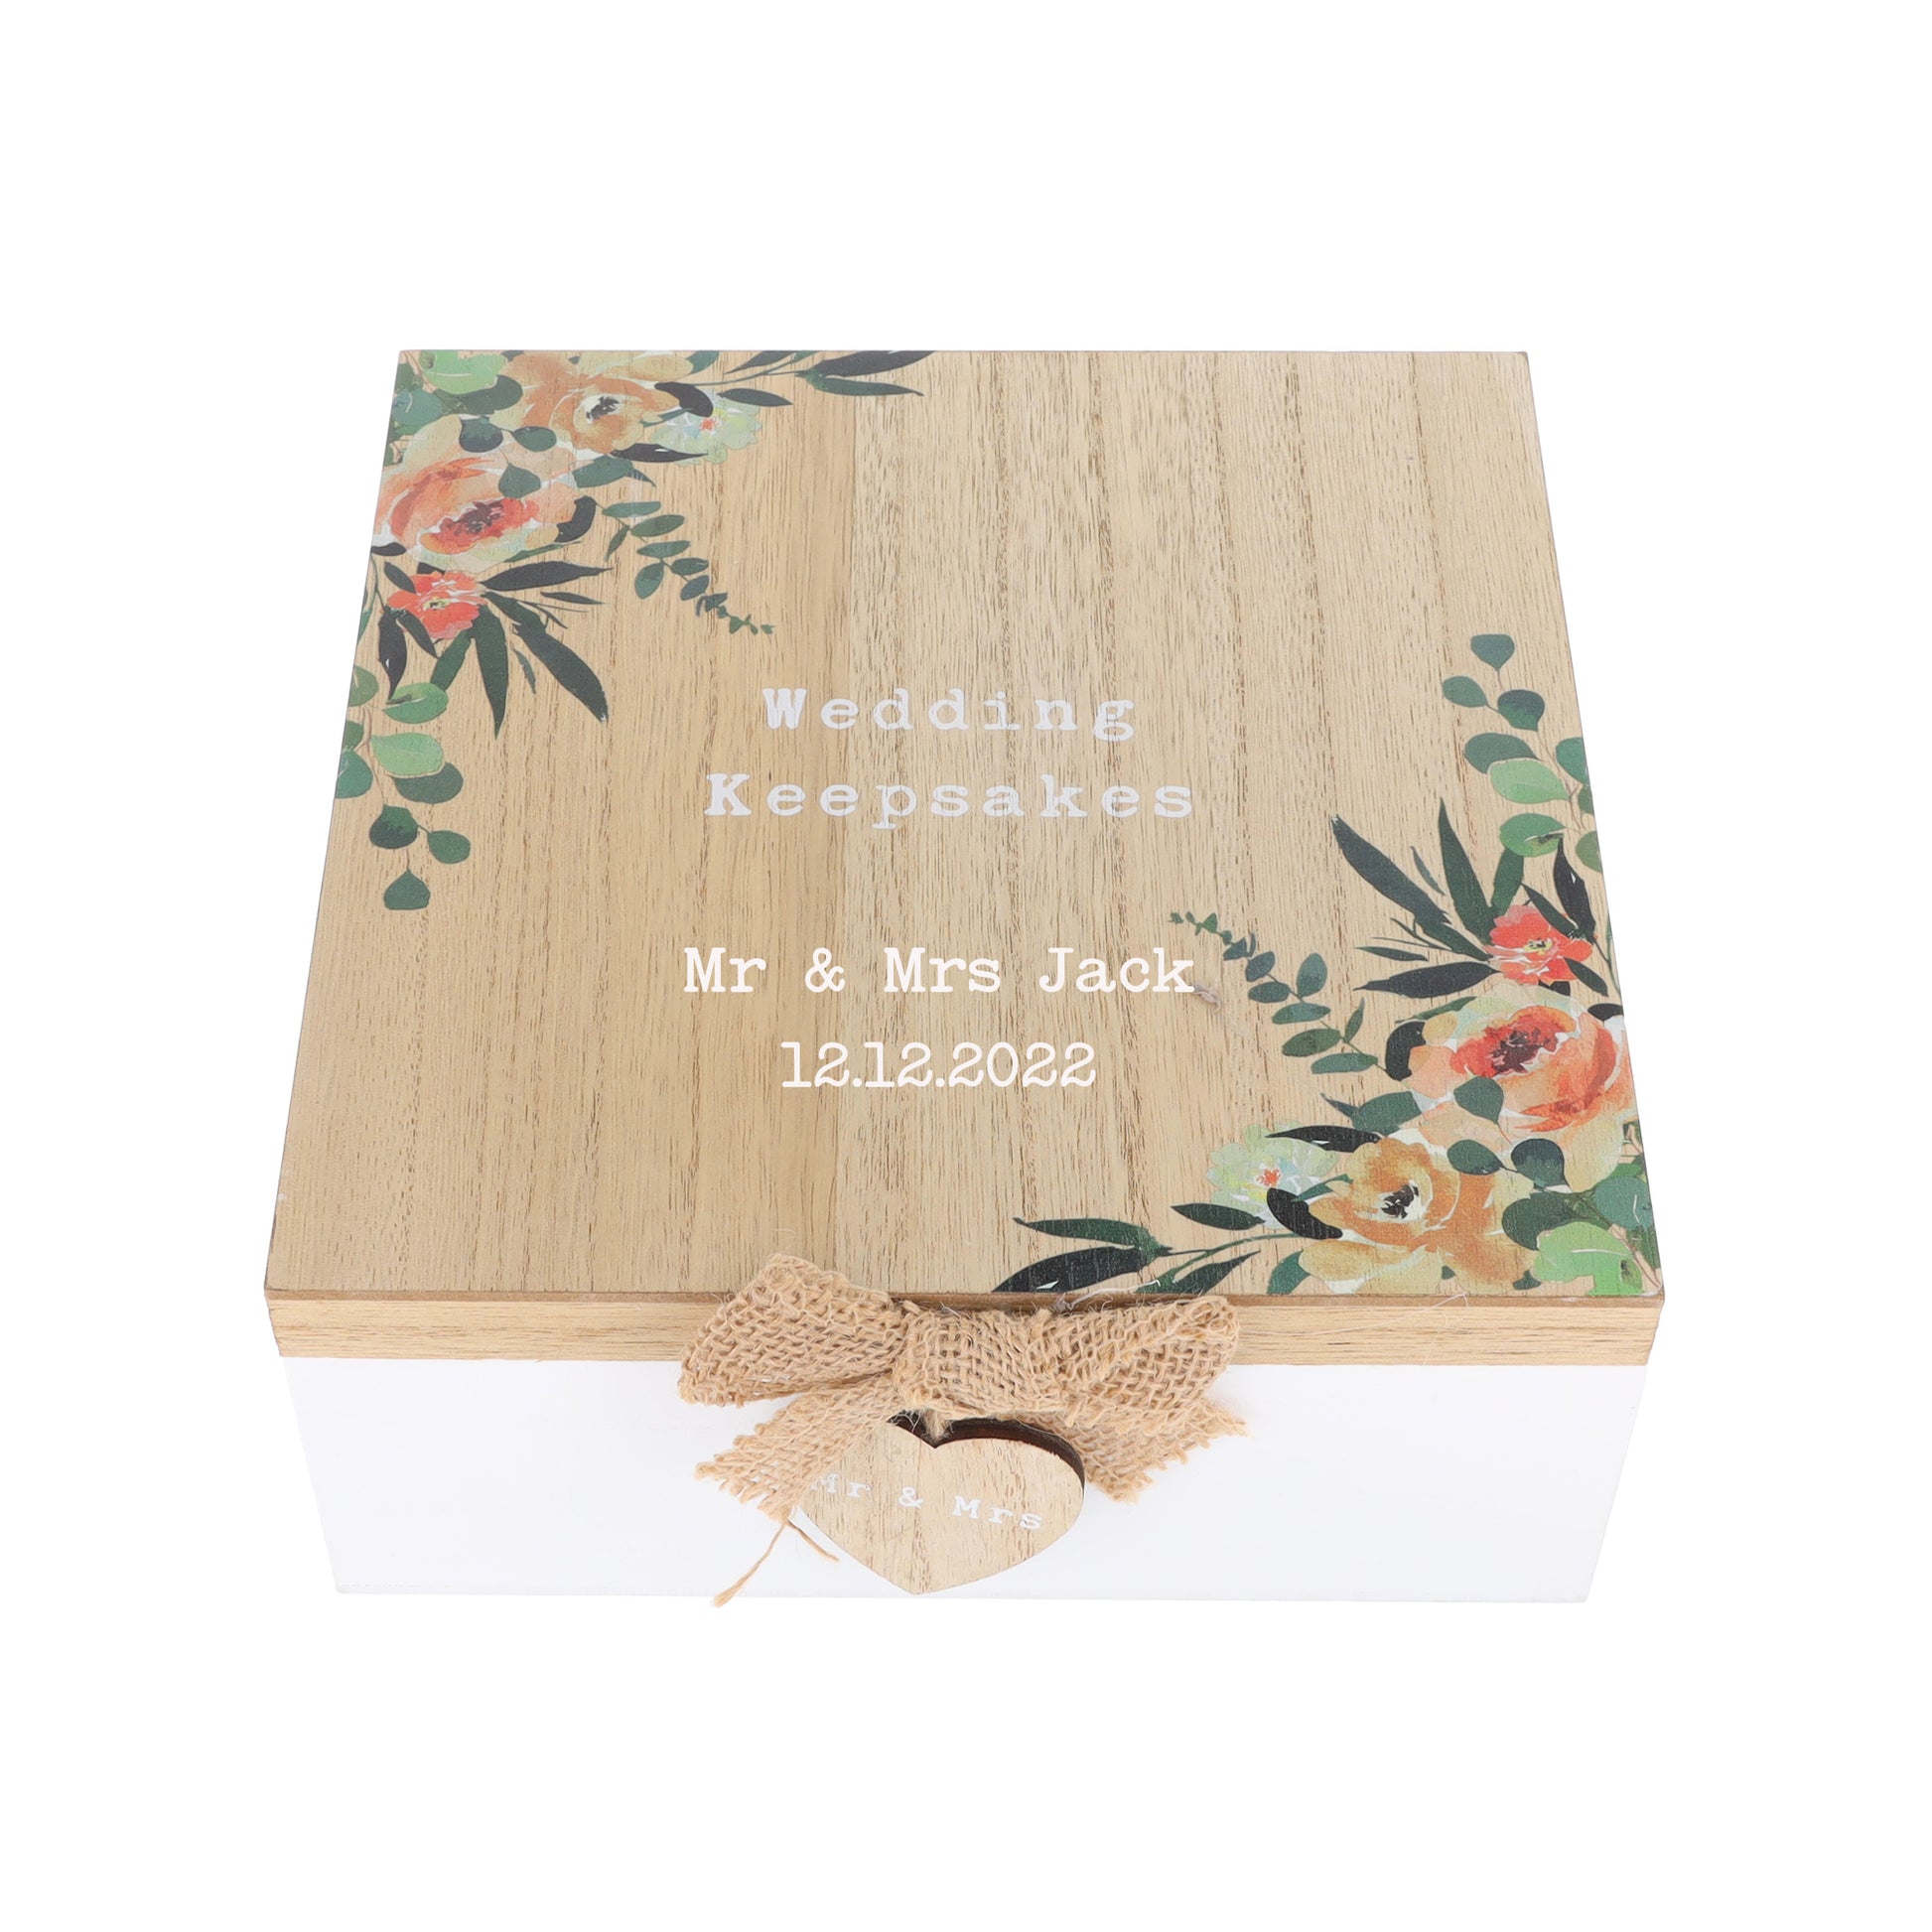 Personalised Vinyl Wooden Wedding Memory Box  - Always Looking Good -   